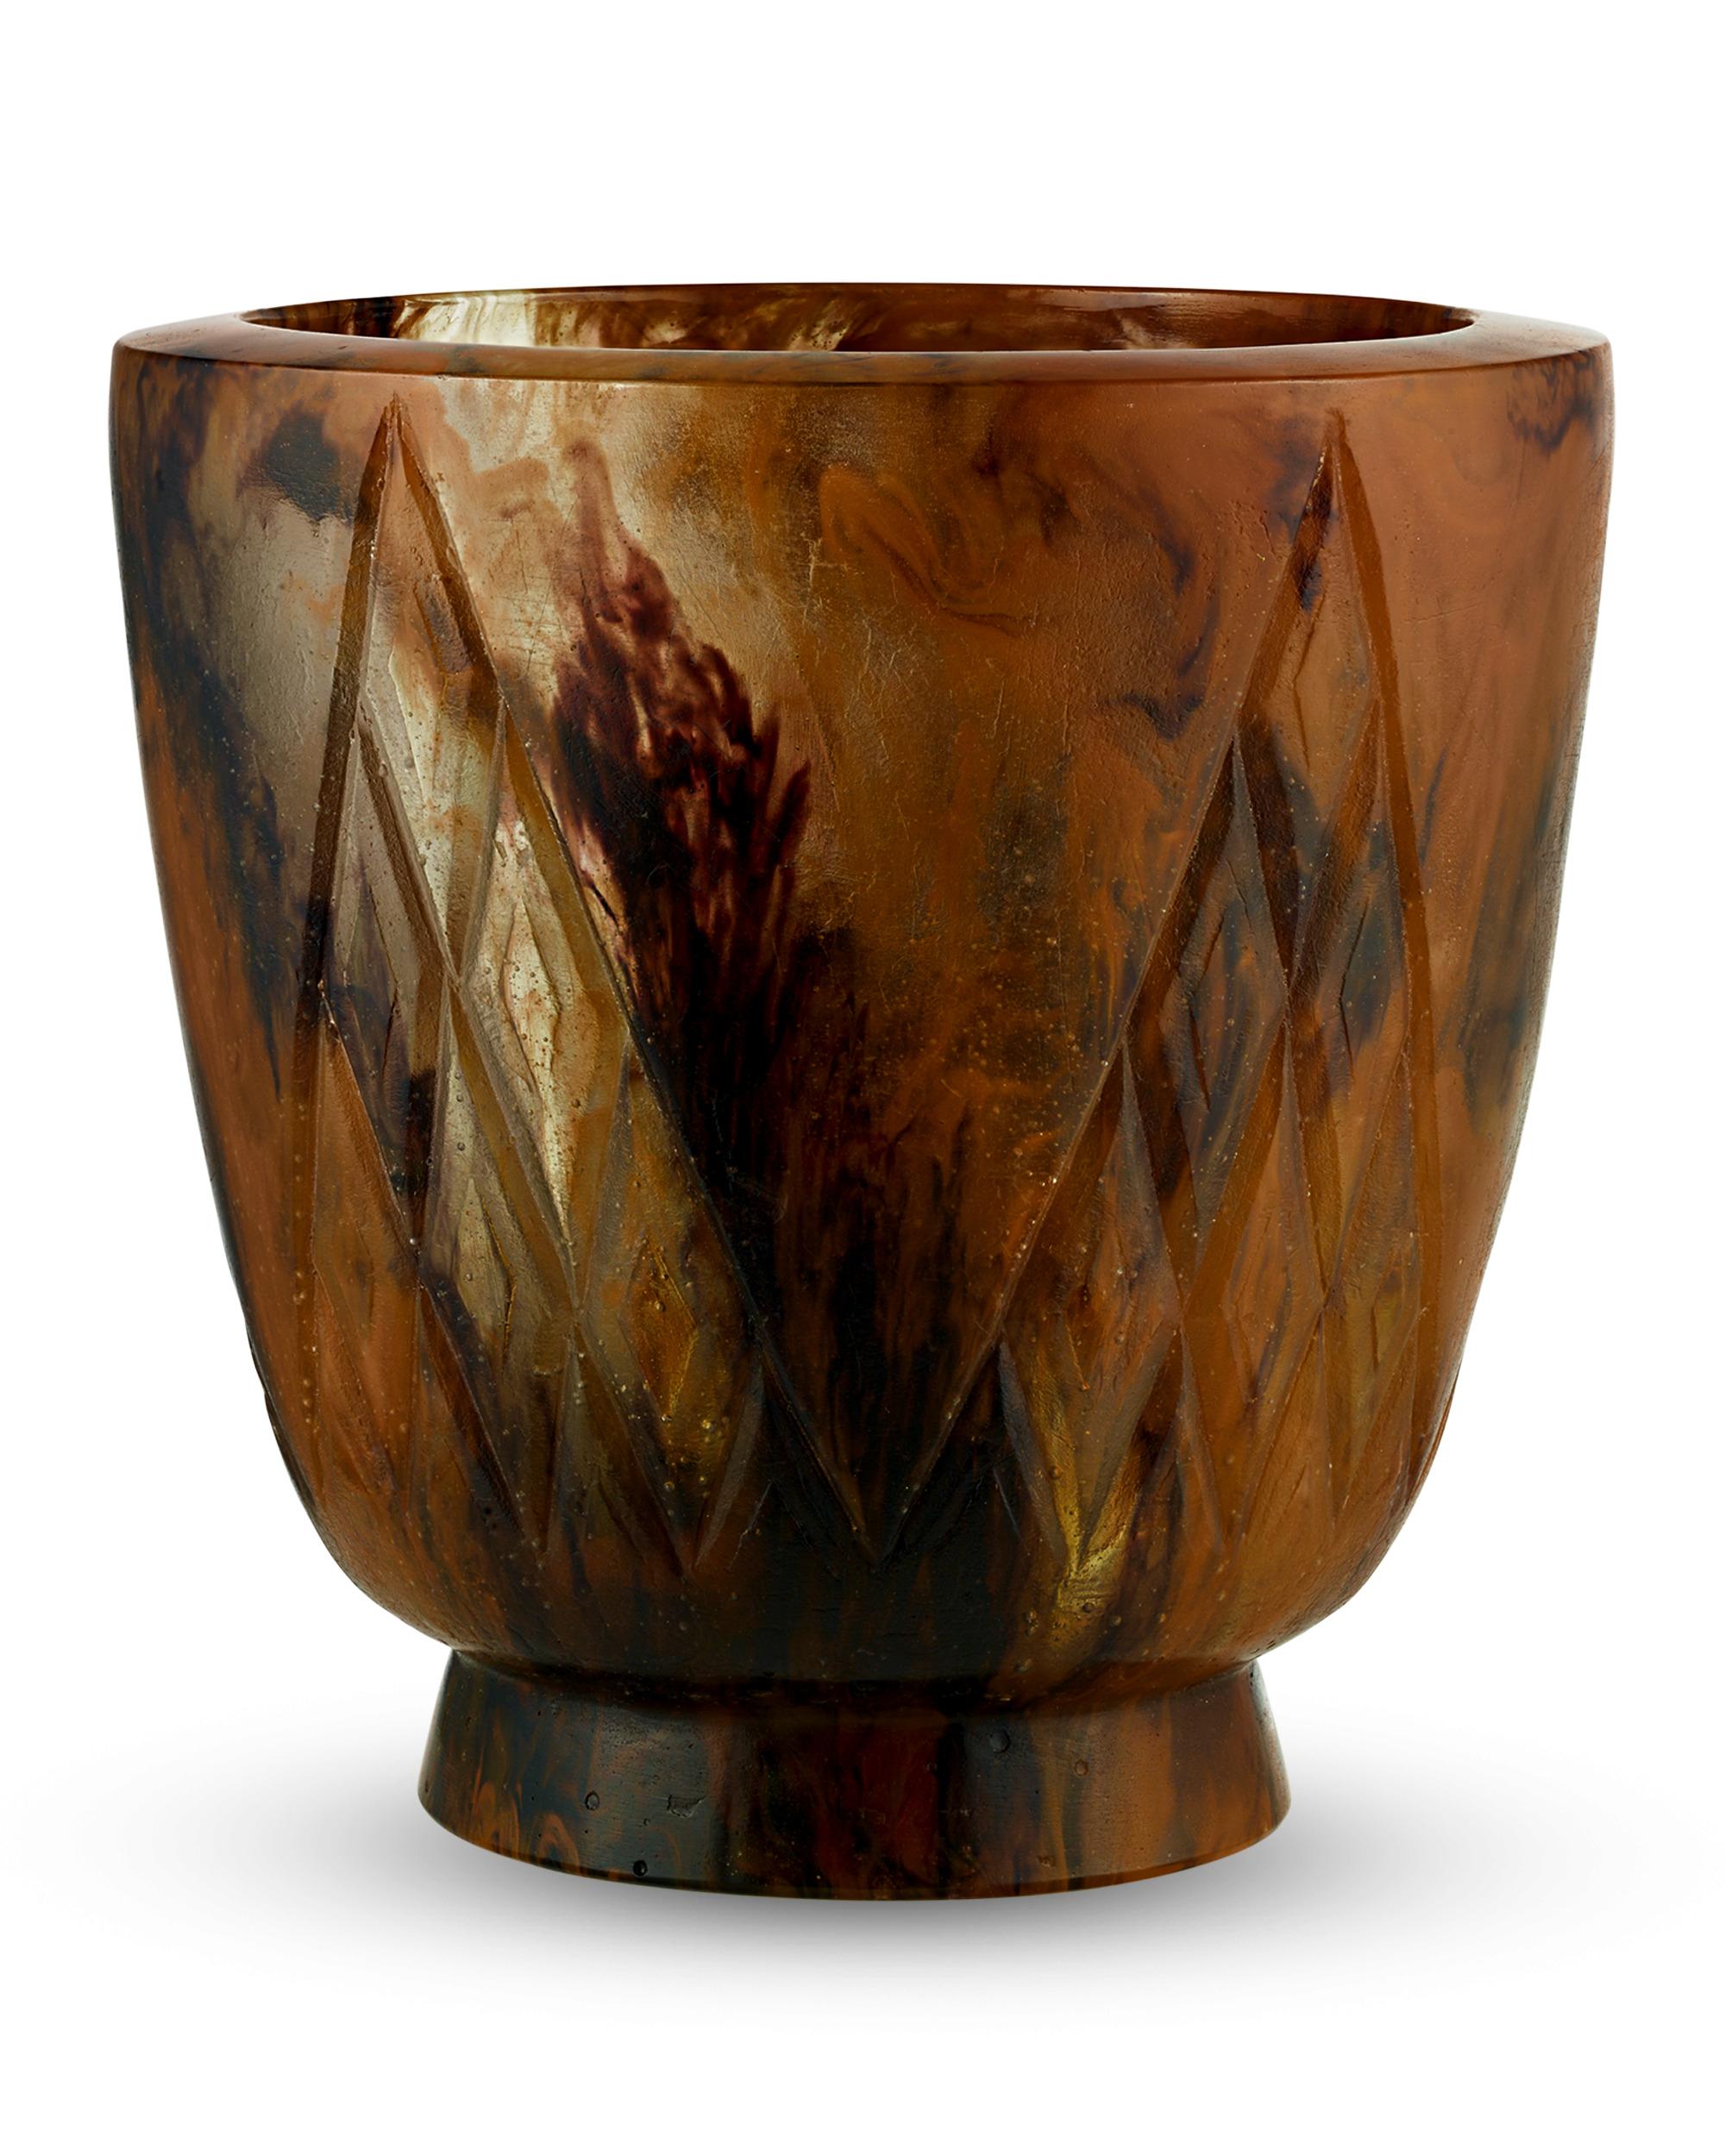 Ce vase scintillant a été fabriqué à la main par le célèbre verrier français François-Émile Décorchemont. Célèbre pour sa maîtrise de la méthode de la pâte de verre, Décorchemont a également perfectionné la méthode de la pâte de cristal, tout aussi